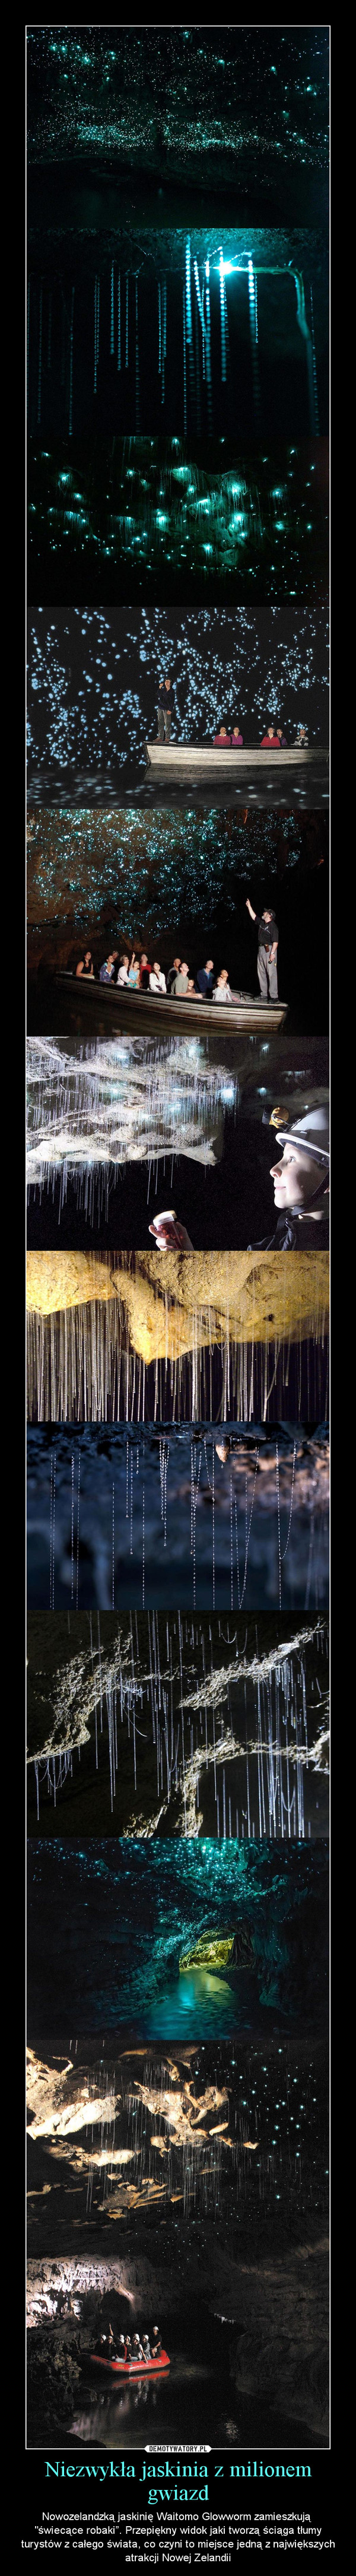 Niezwykła jaskinia z milionem gwiazd – Nowozelandzką jaskinię Waitomo Glowworm zamieszkują "świecące robaki”. Przepiękny widok jaki tworzą ściąga tłumy turystów z całego świata, co czyni to miejsce jedną z największych atrakcji Nowej Zelandii 